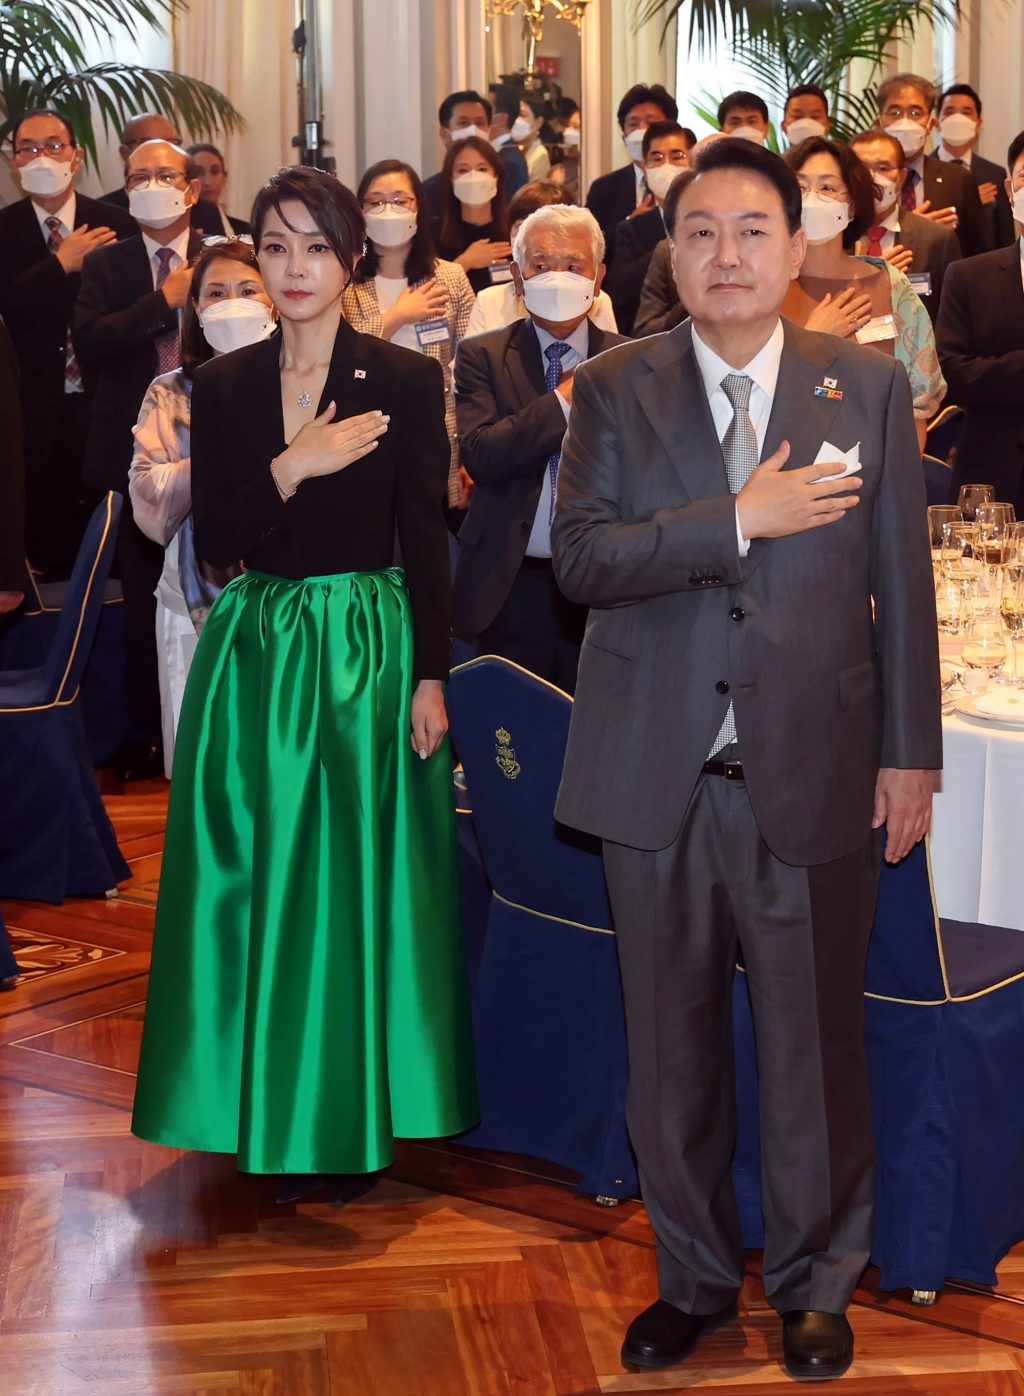 Phong cách thời trang “New Woman” của phu nhân tổng thống Hàn Quốc được gói gọn trong 3 chữ: Sang trọng, độc lập, tinh tế-3